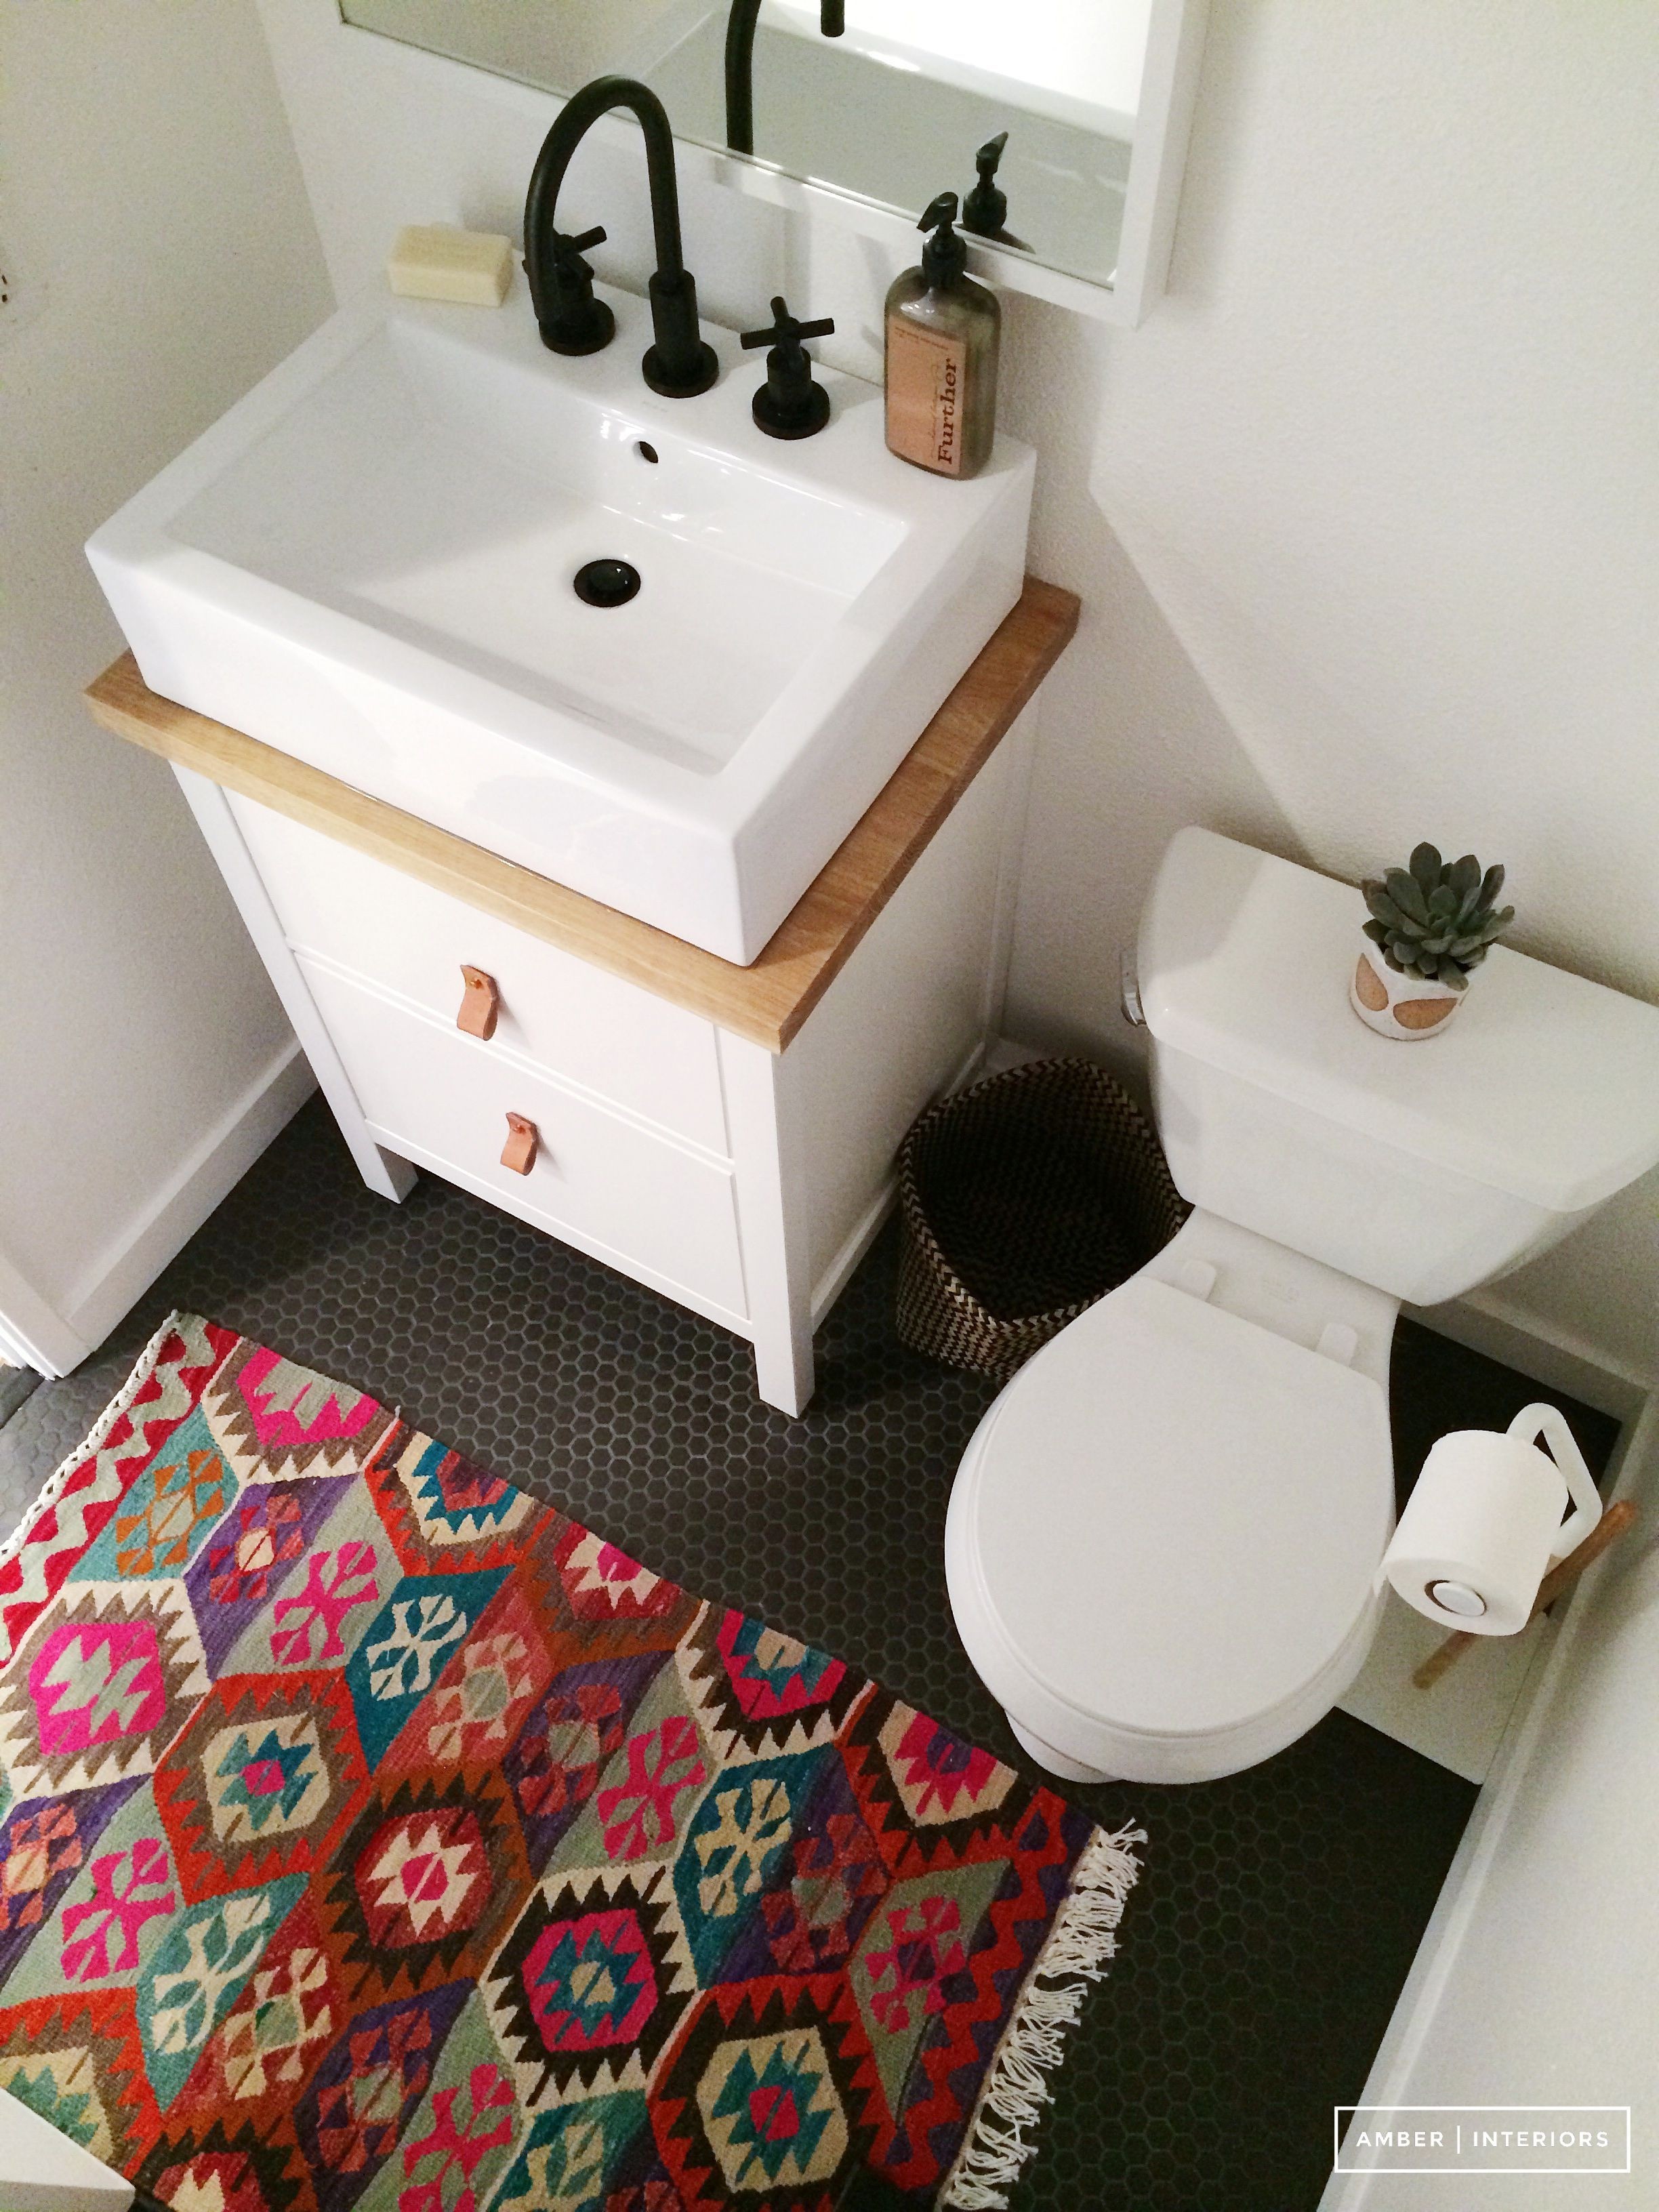 Patterned bathroom rugs